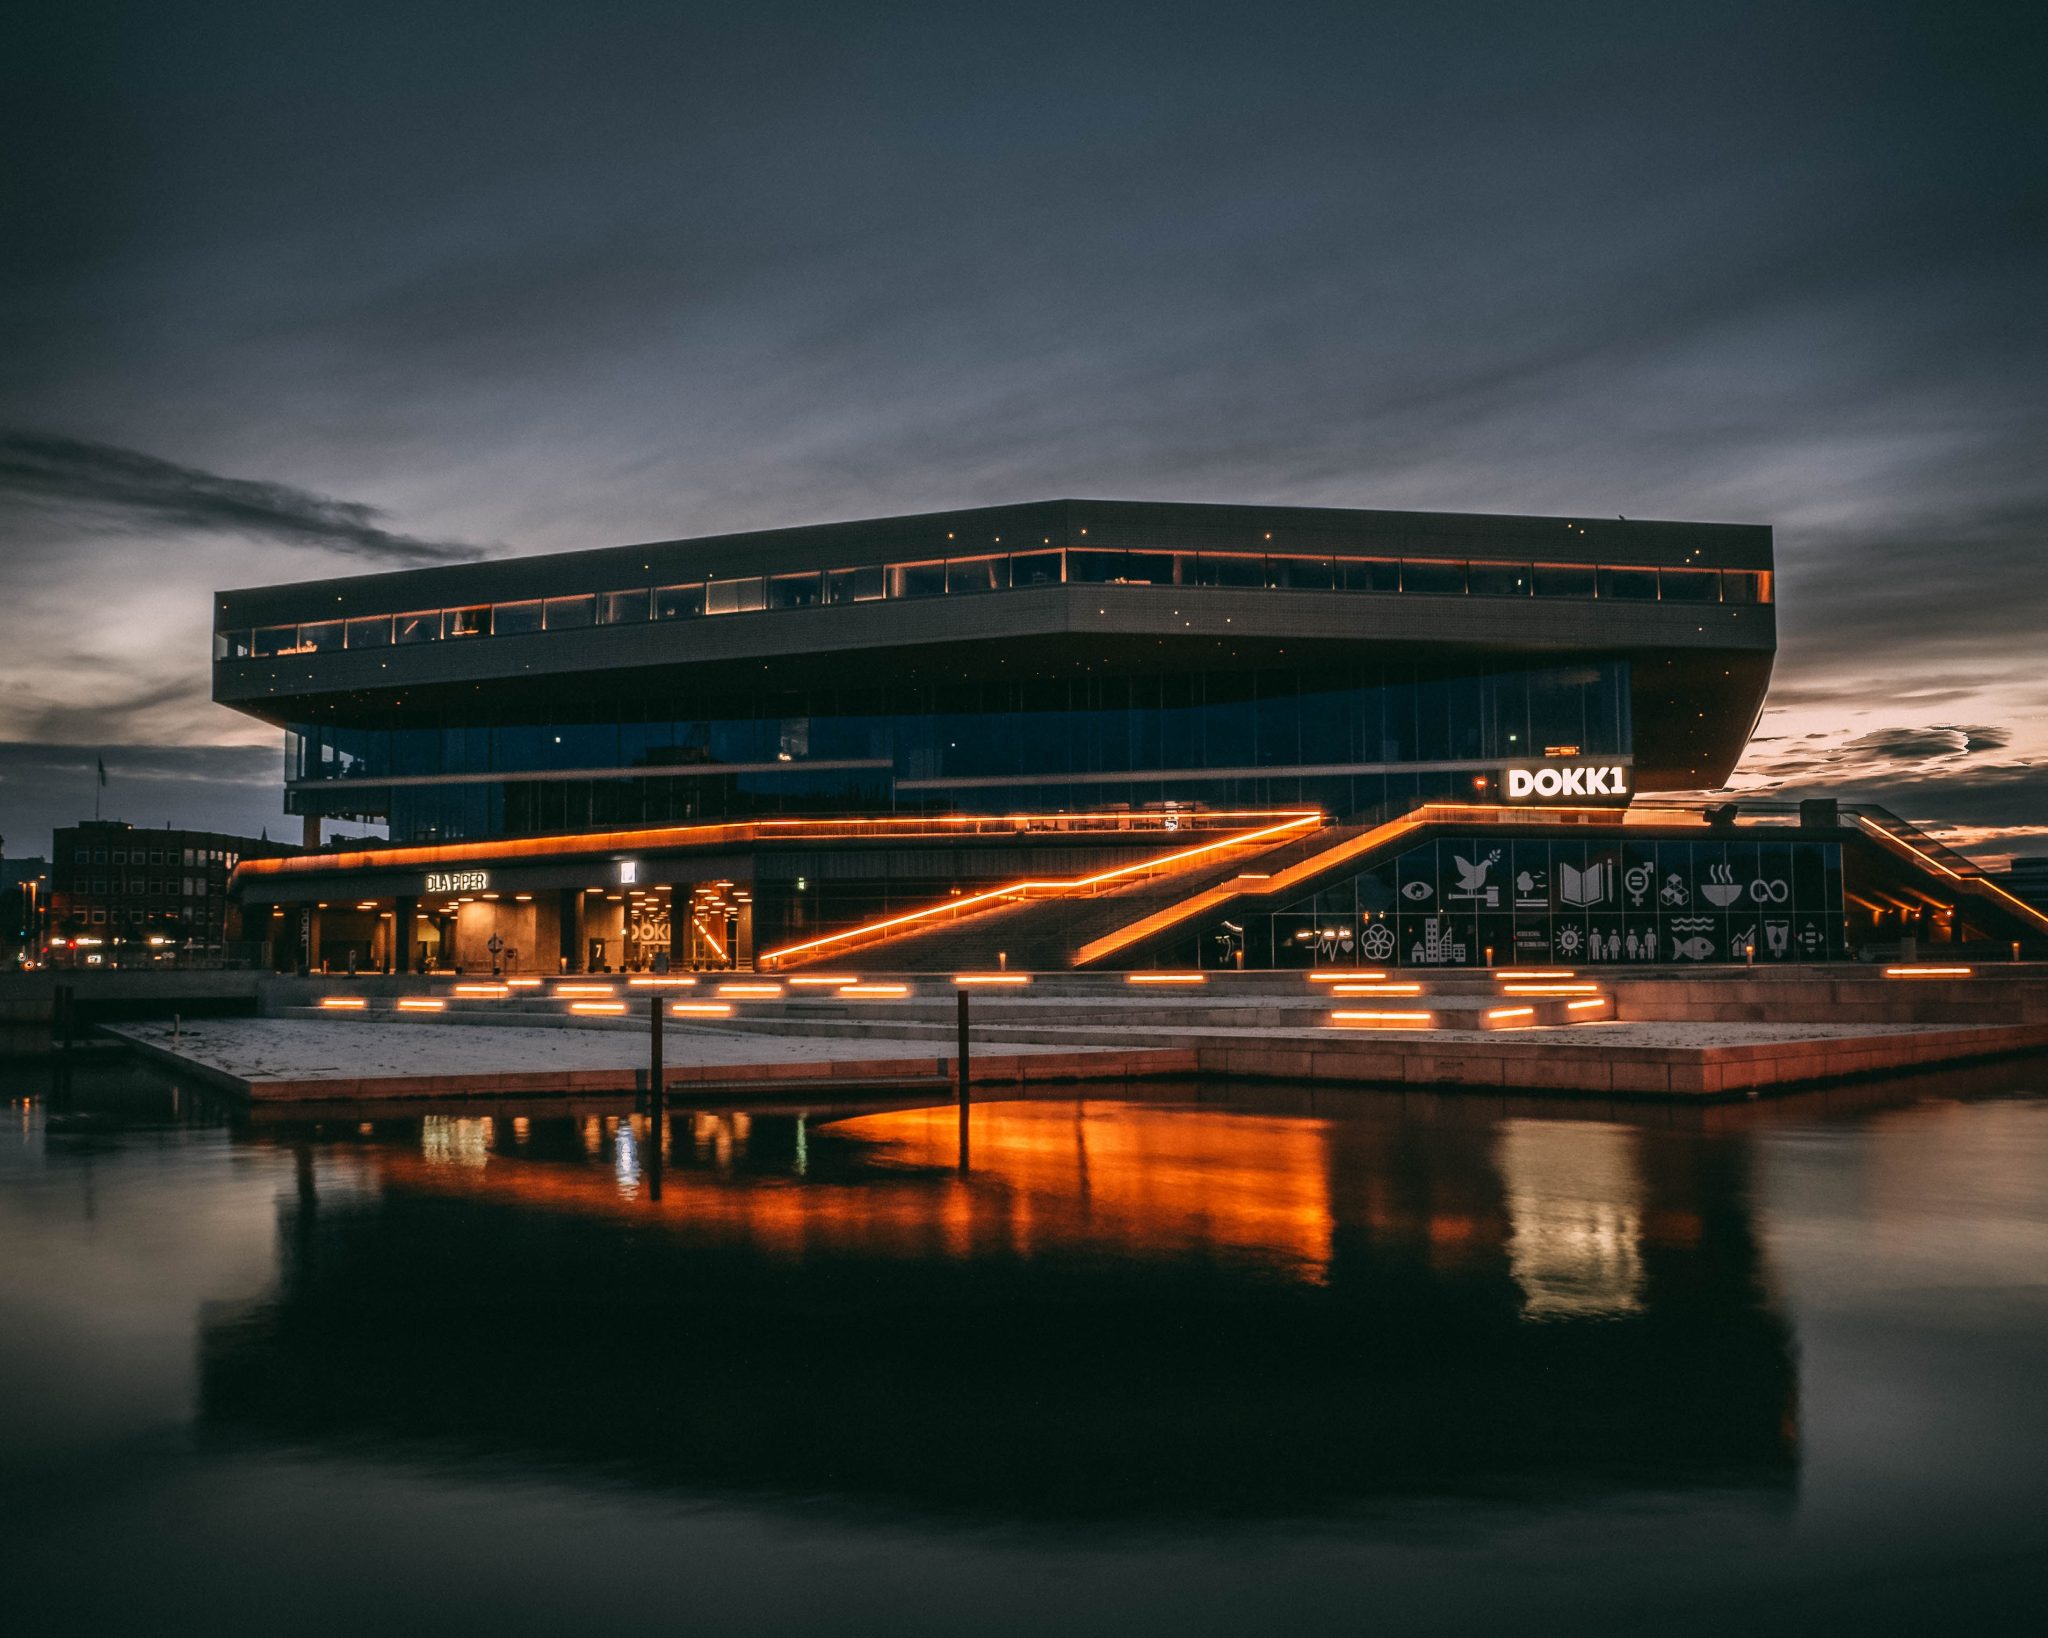 Bibliothek Dokk1 in Aarhus - Foto: Unsplash / Nicolas-Weldingh